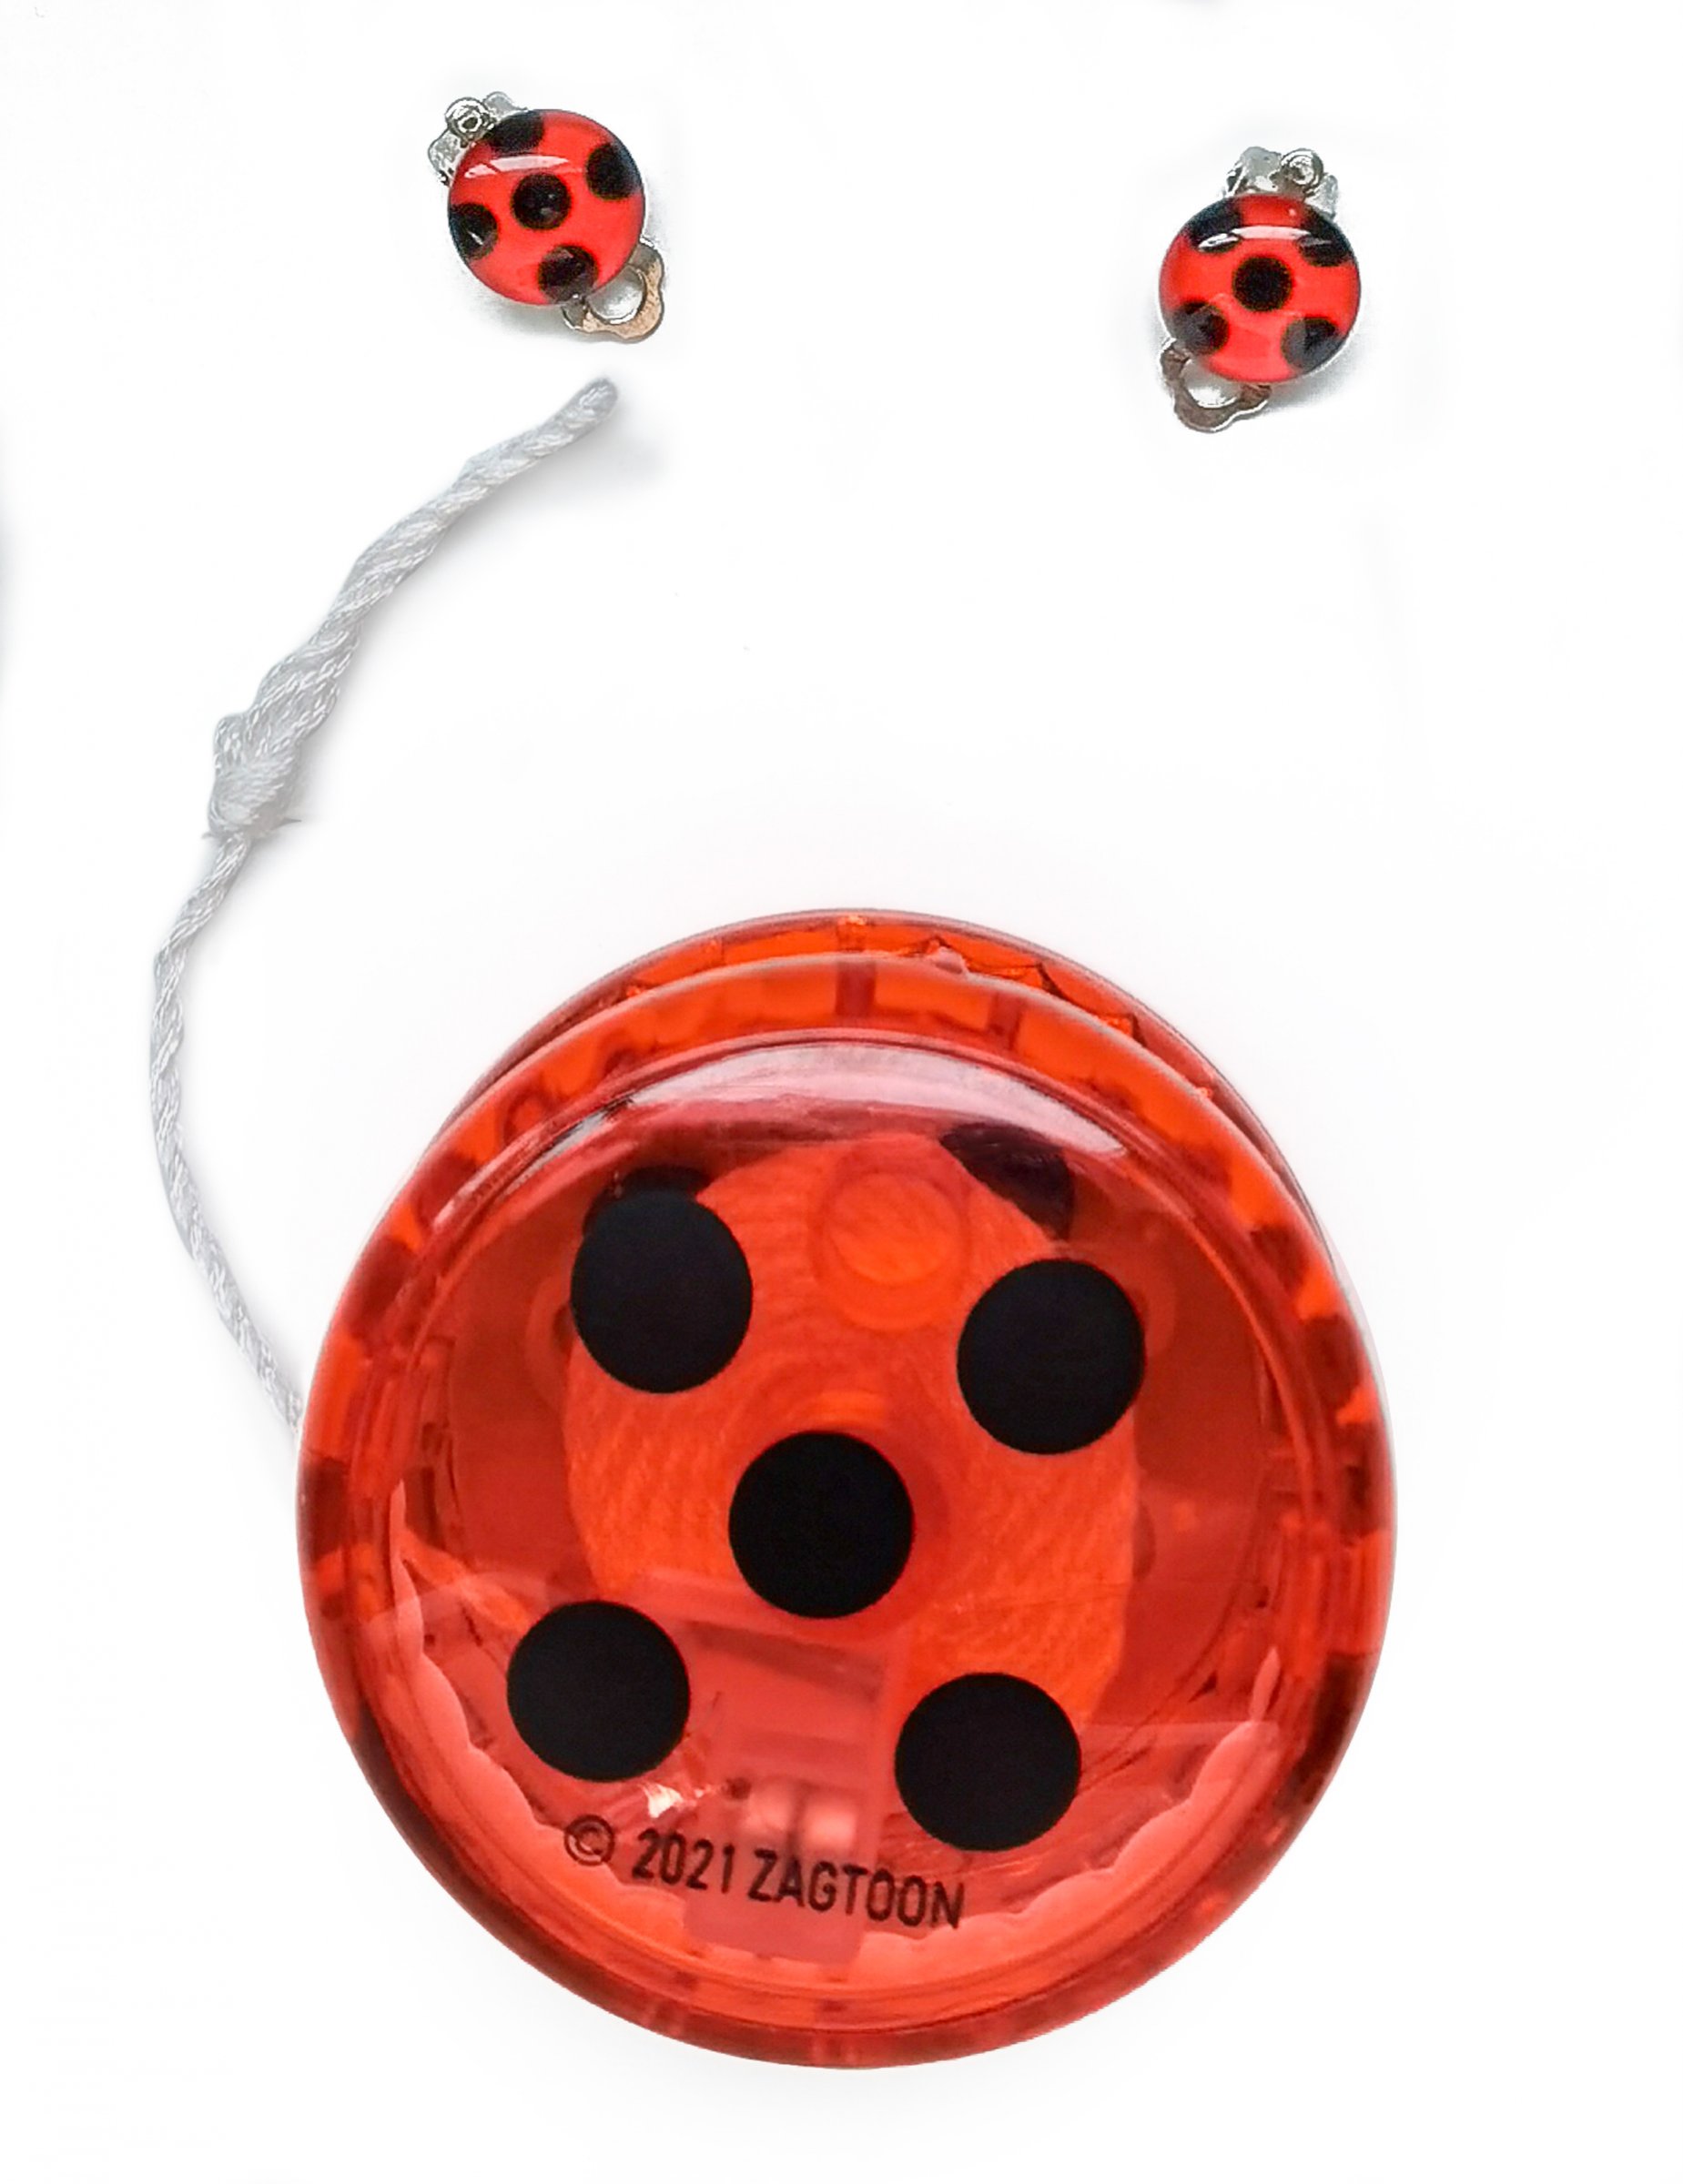 BANDAI Yoyo lumineux Ladybug - Miraculous pas cher 